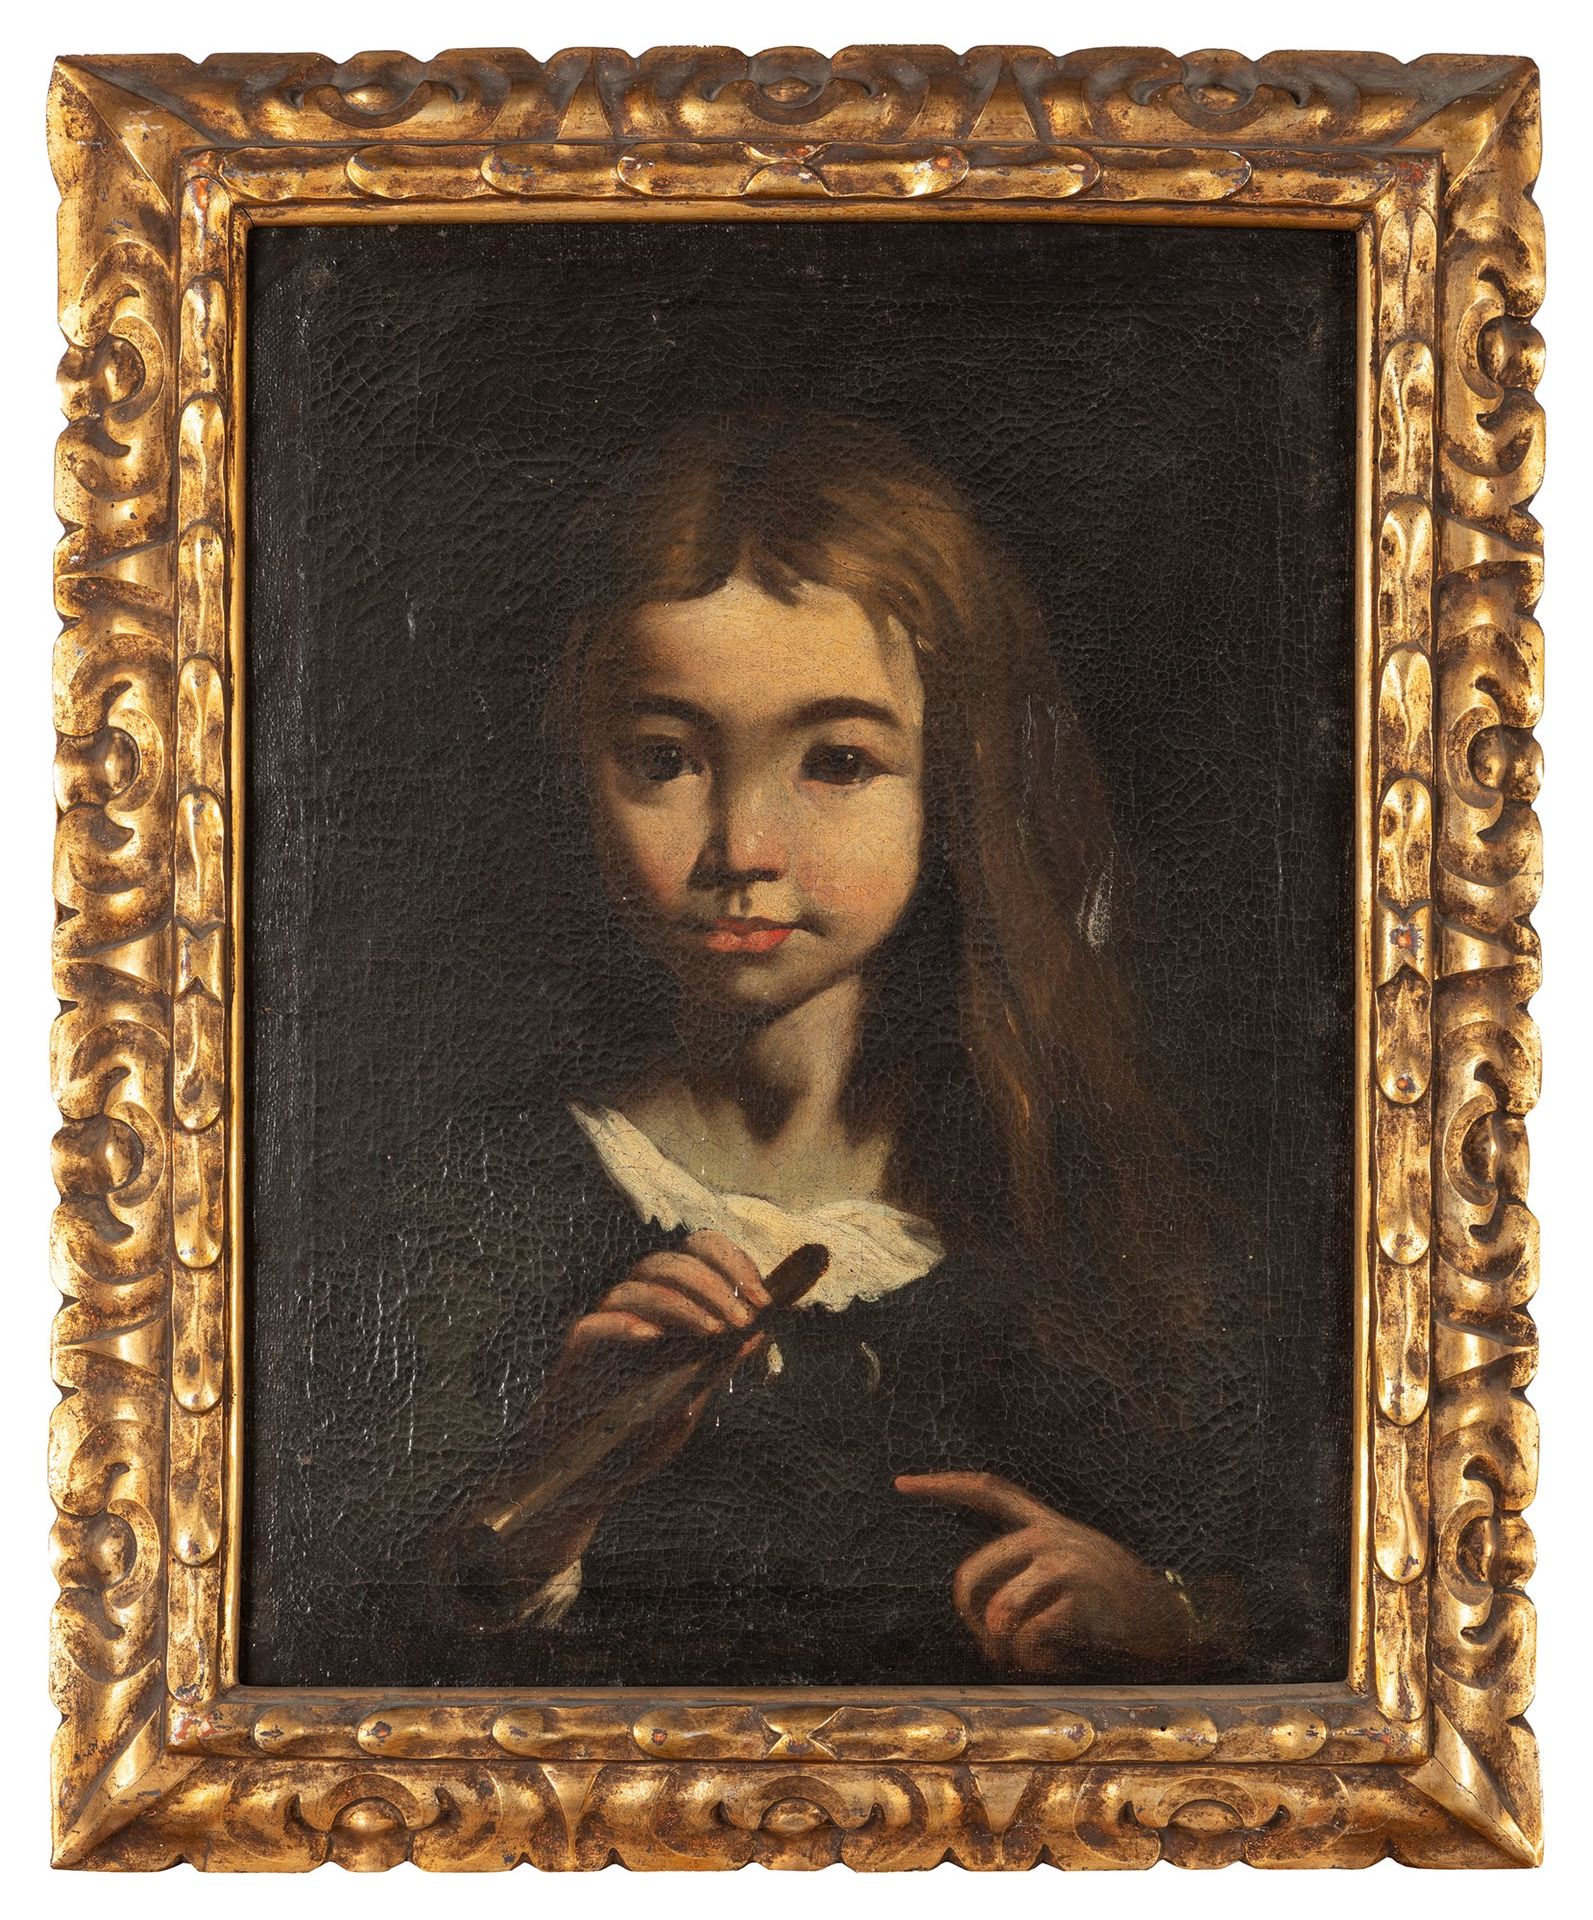 Scuola dell'Italia settentrionale, secolo XVII 手持长笛的小女孩肖像

布面油画
45.2 x 34.5 cm